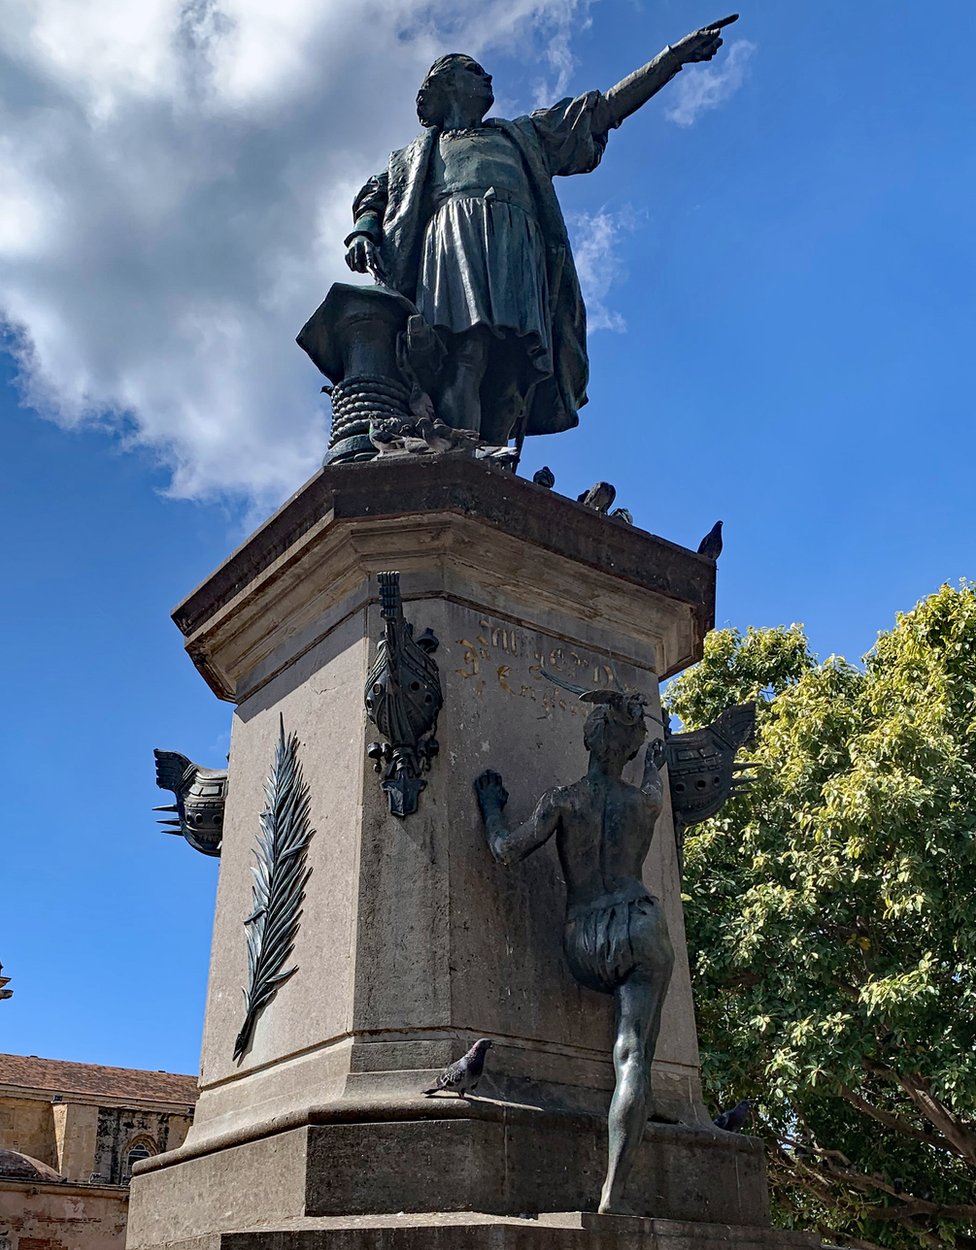 Monumento a Cristóbal Colón con la cacique Anacaona al pie del pedestal. Parque Colón, Ciudad Colonial Santo Domingo